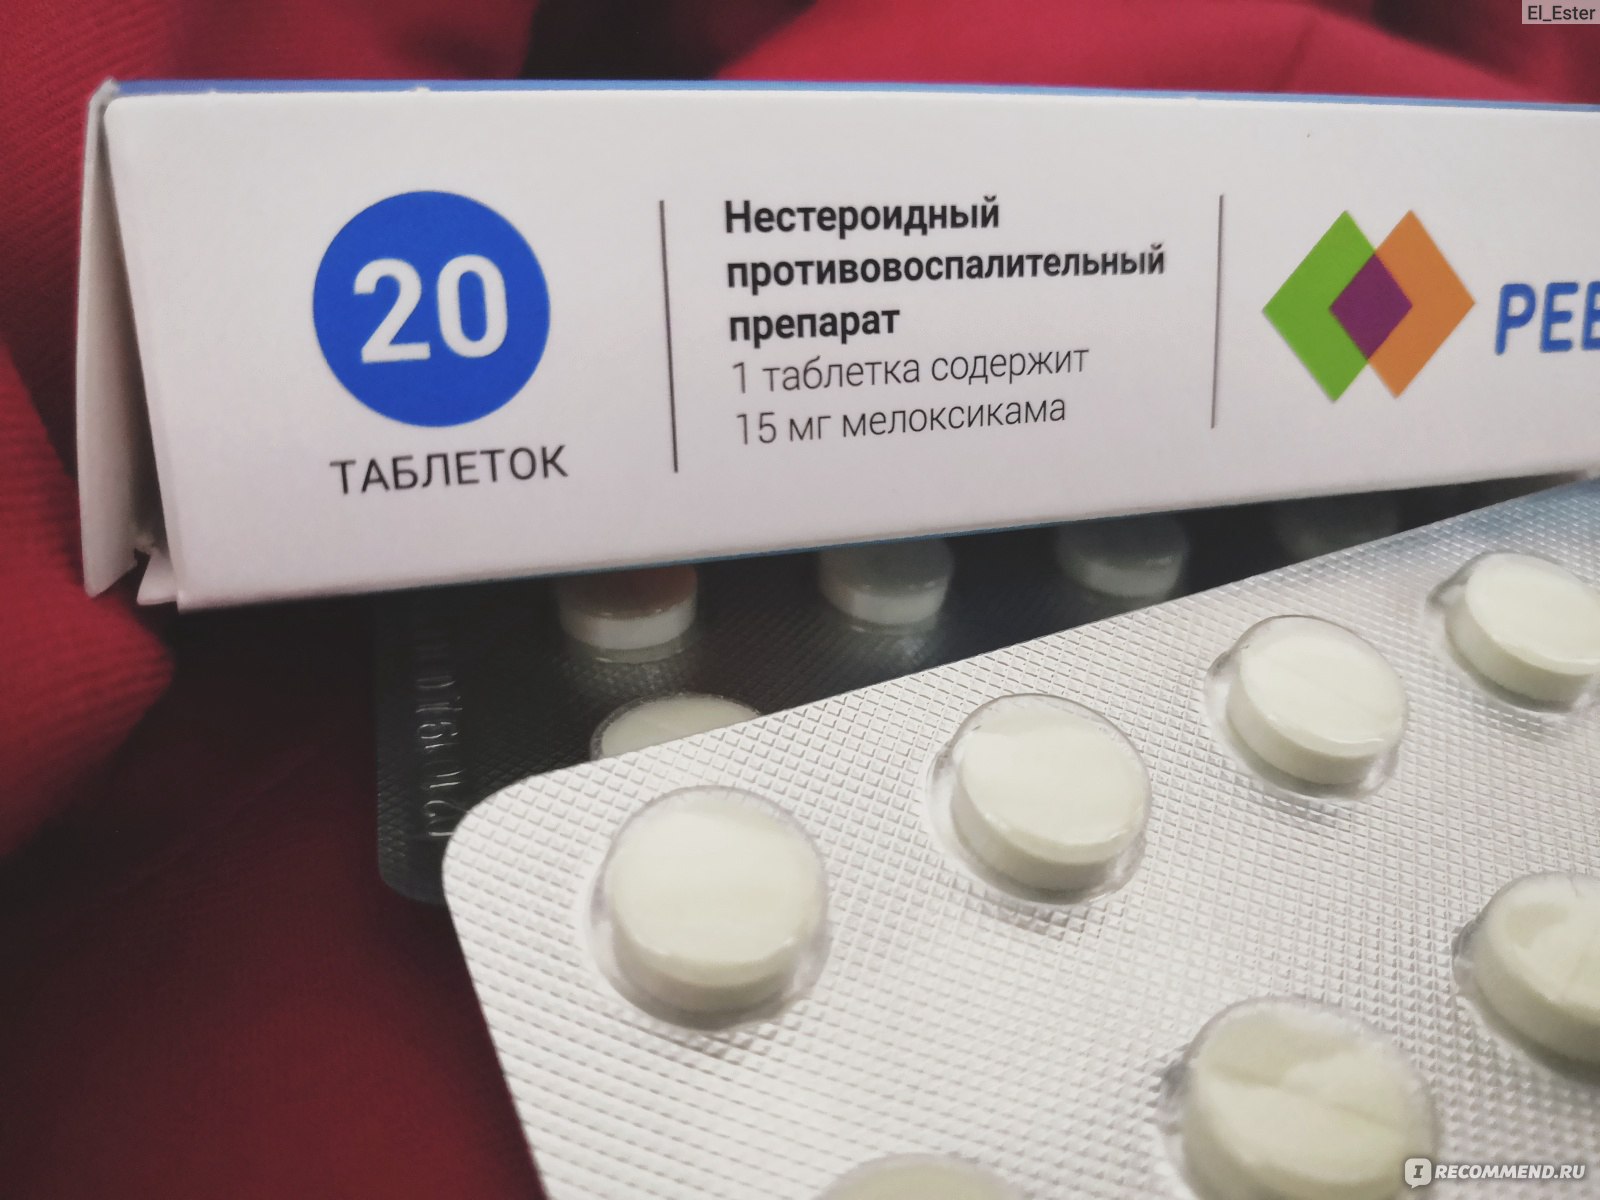 Противовоспалительные препараты для детей при простуде и насморке pulmono.ru
противовоспалительные препараты для детей при простуде и насморке